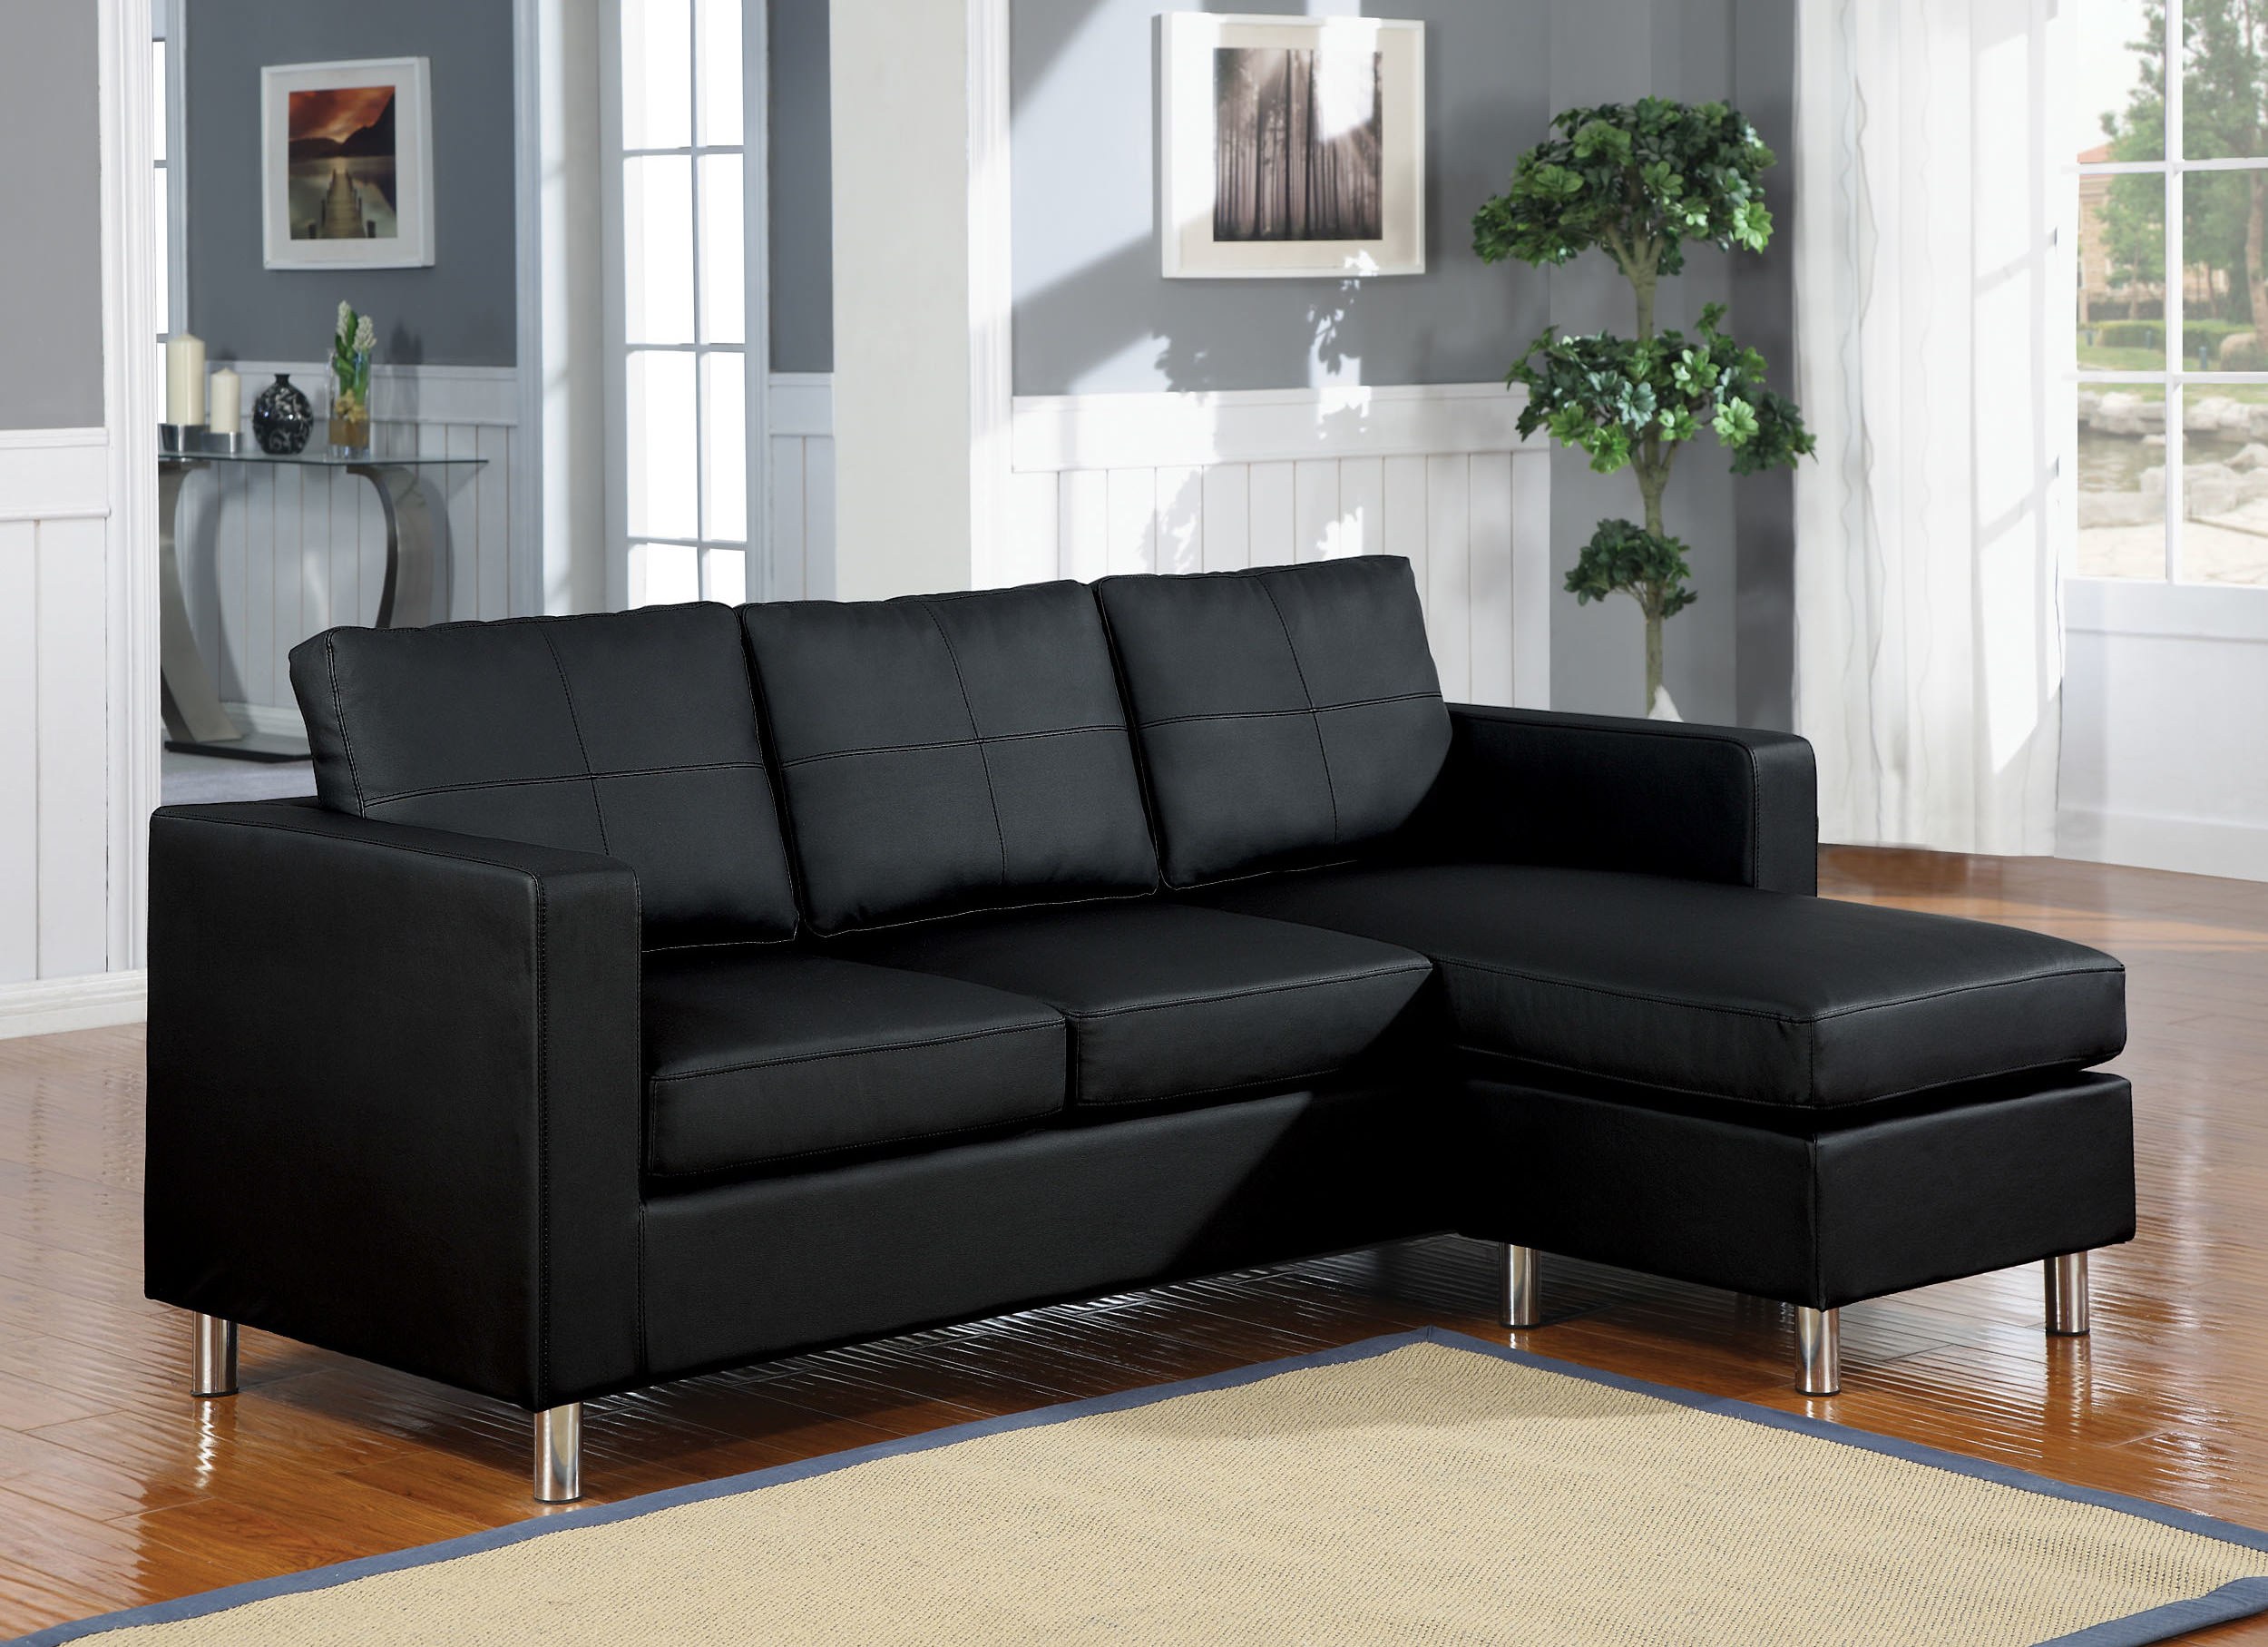 Стильные угловые диваны. Черный диван. Черный кожаный диван. Черный кожаный угловой диван. Черный диван в интерьере.